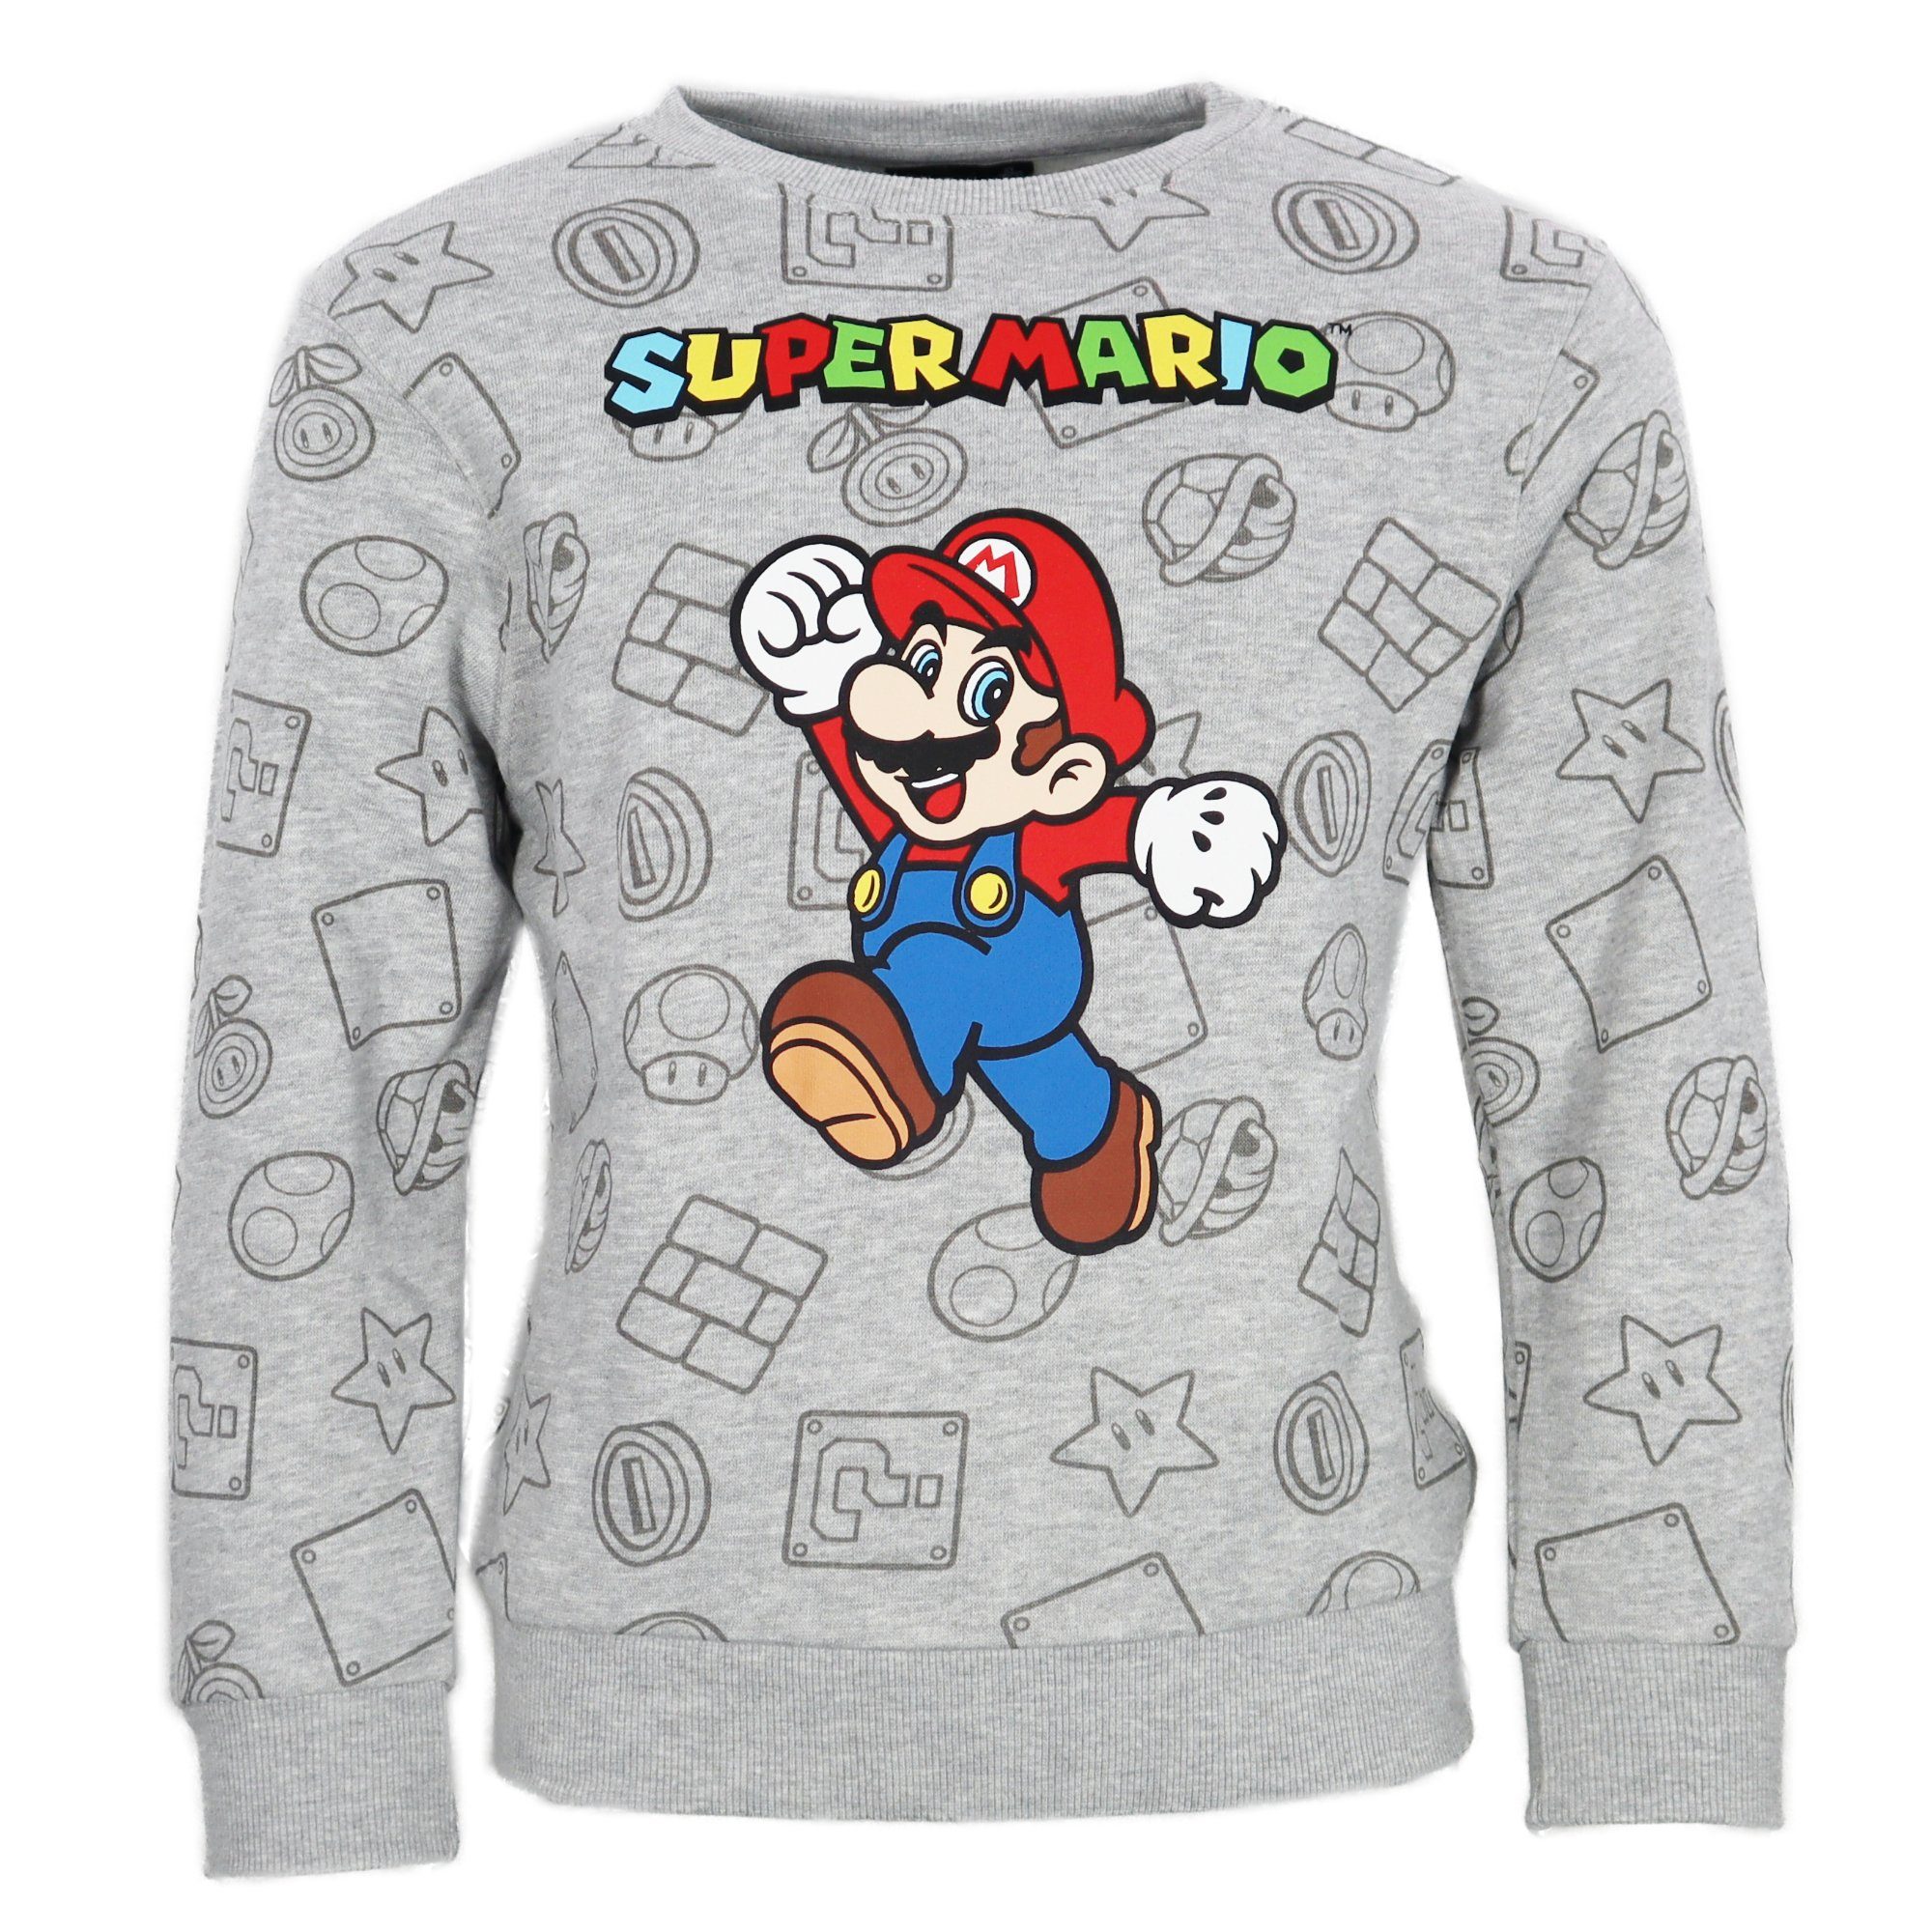 Super Mario Sweater Super Mario Gamer Kinder Jungen Pulli Pullover Gr. 104 bis 140